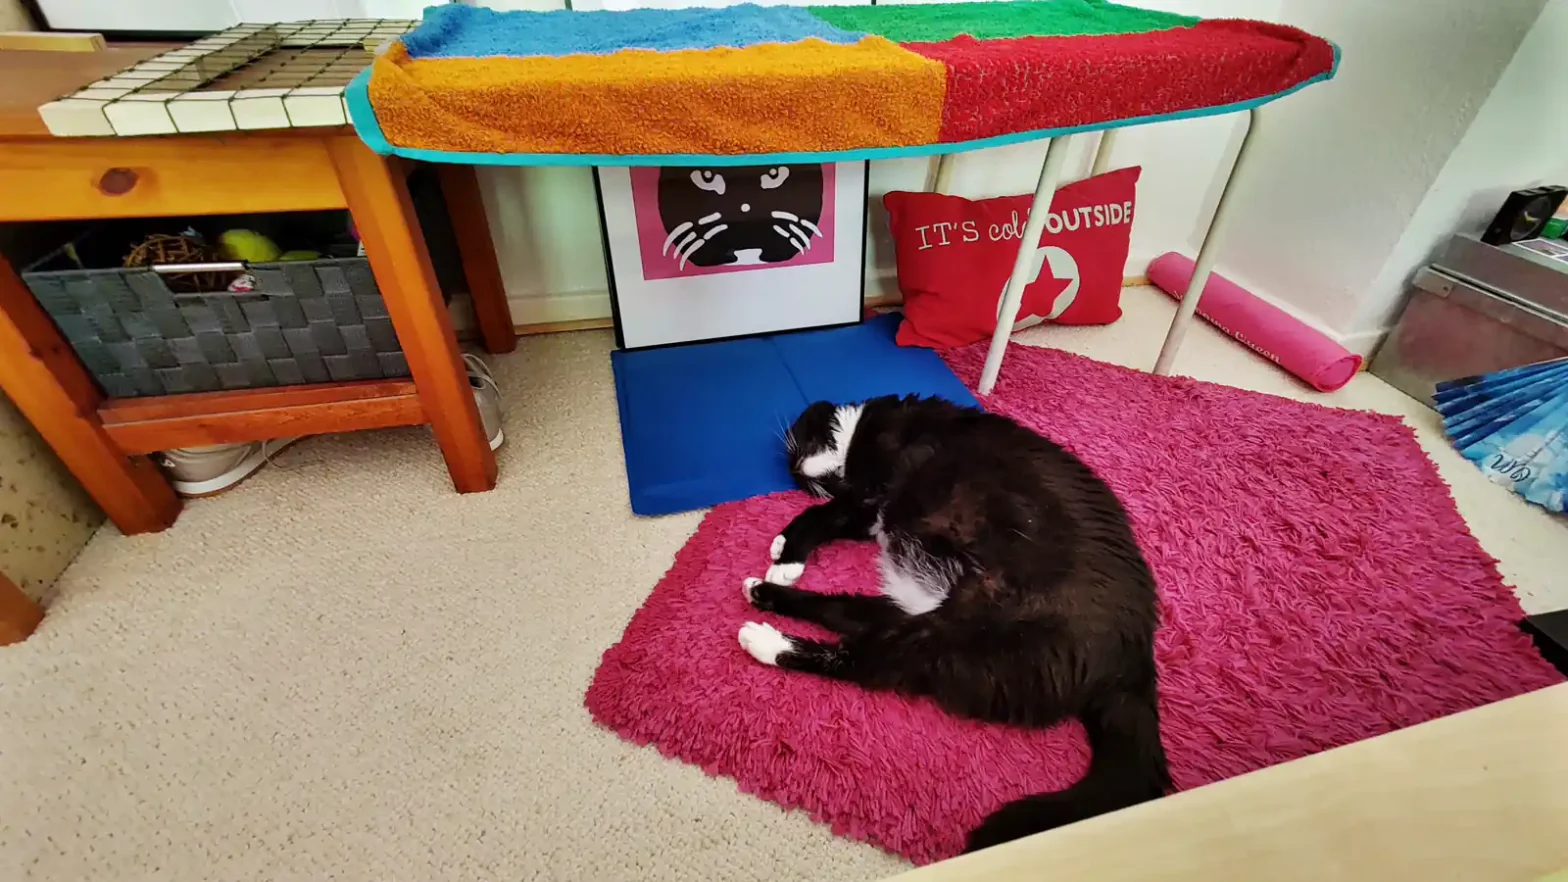 Katze Luzi lässt sich an ihrem Lieblingsplatz mit nassem Handtuch kühlen